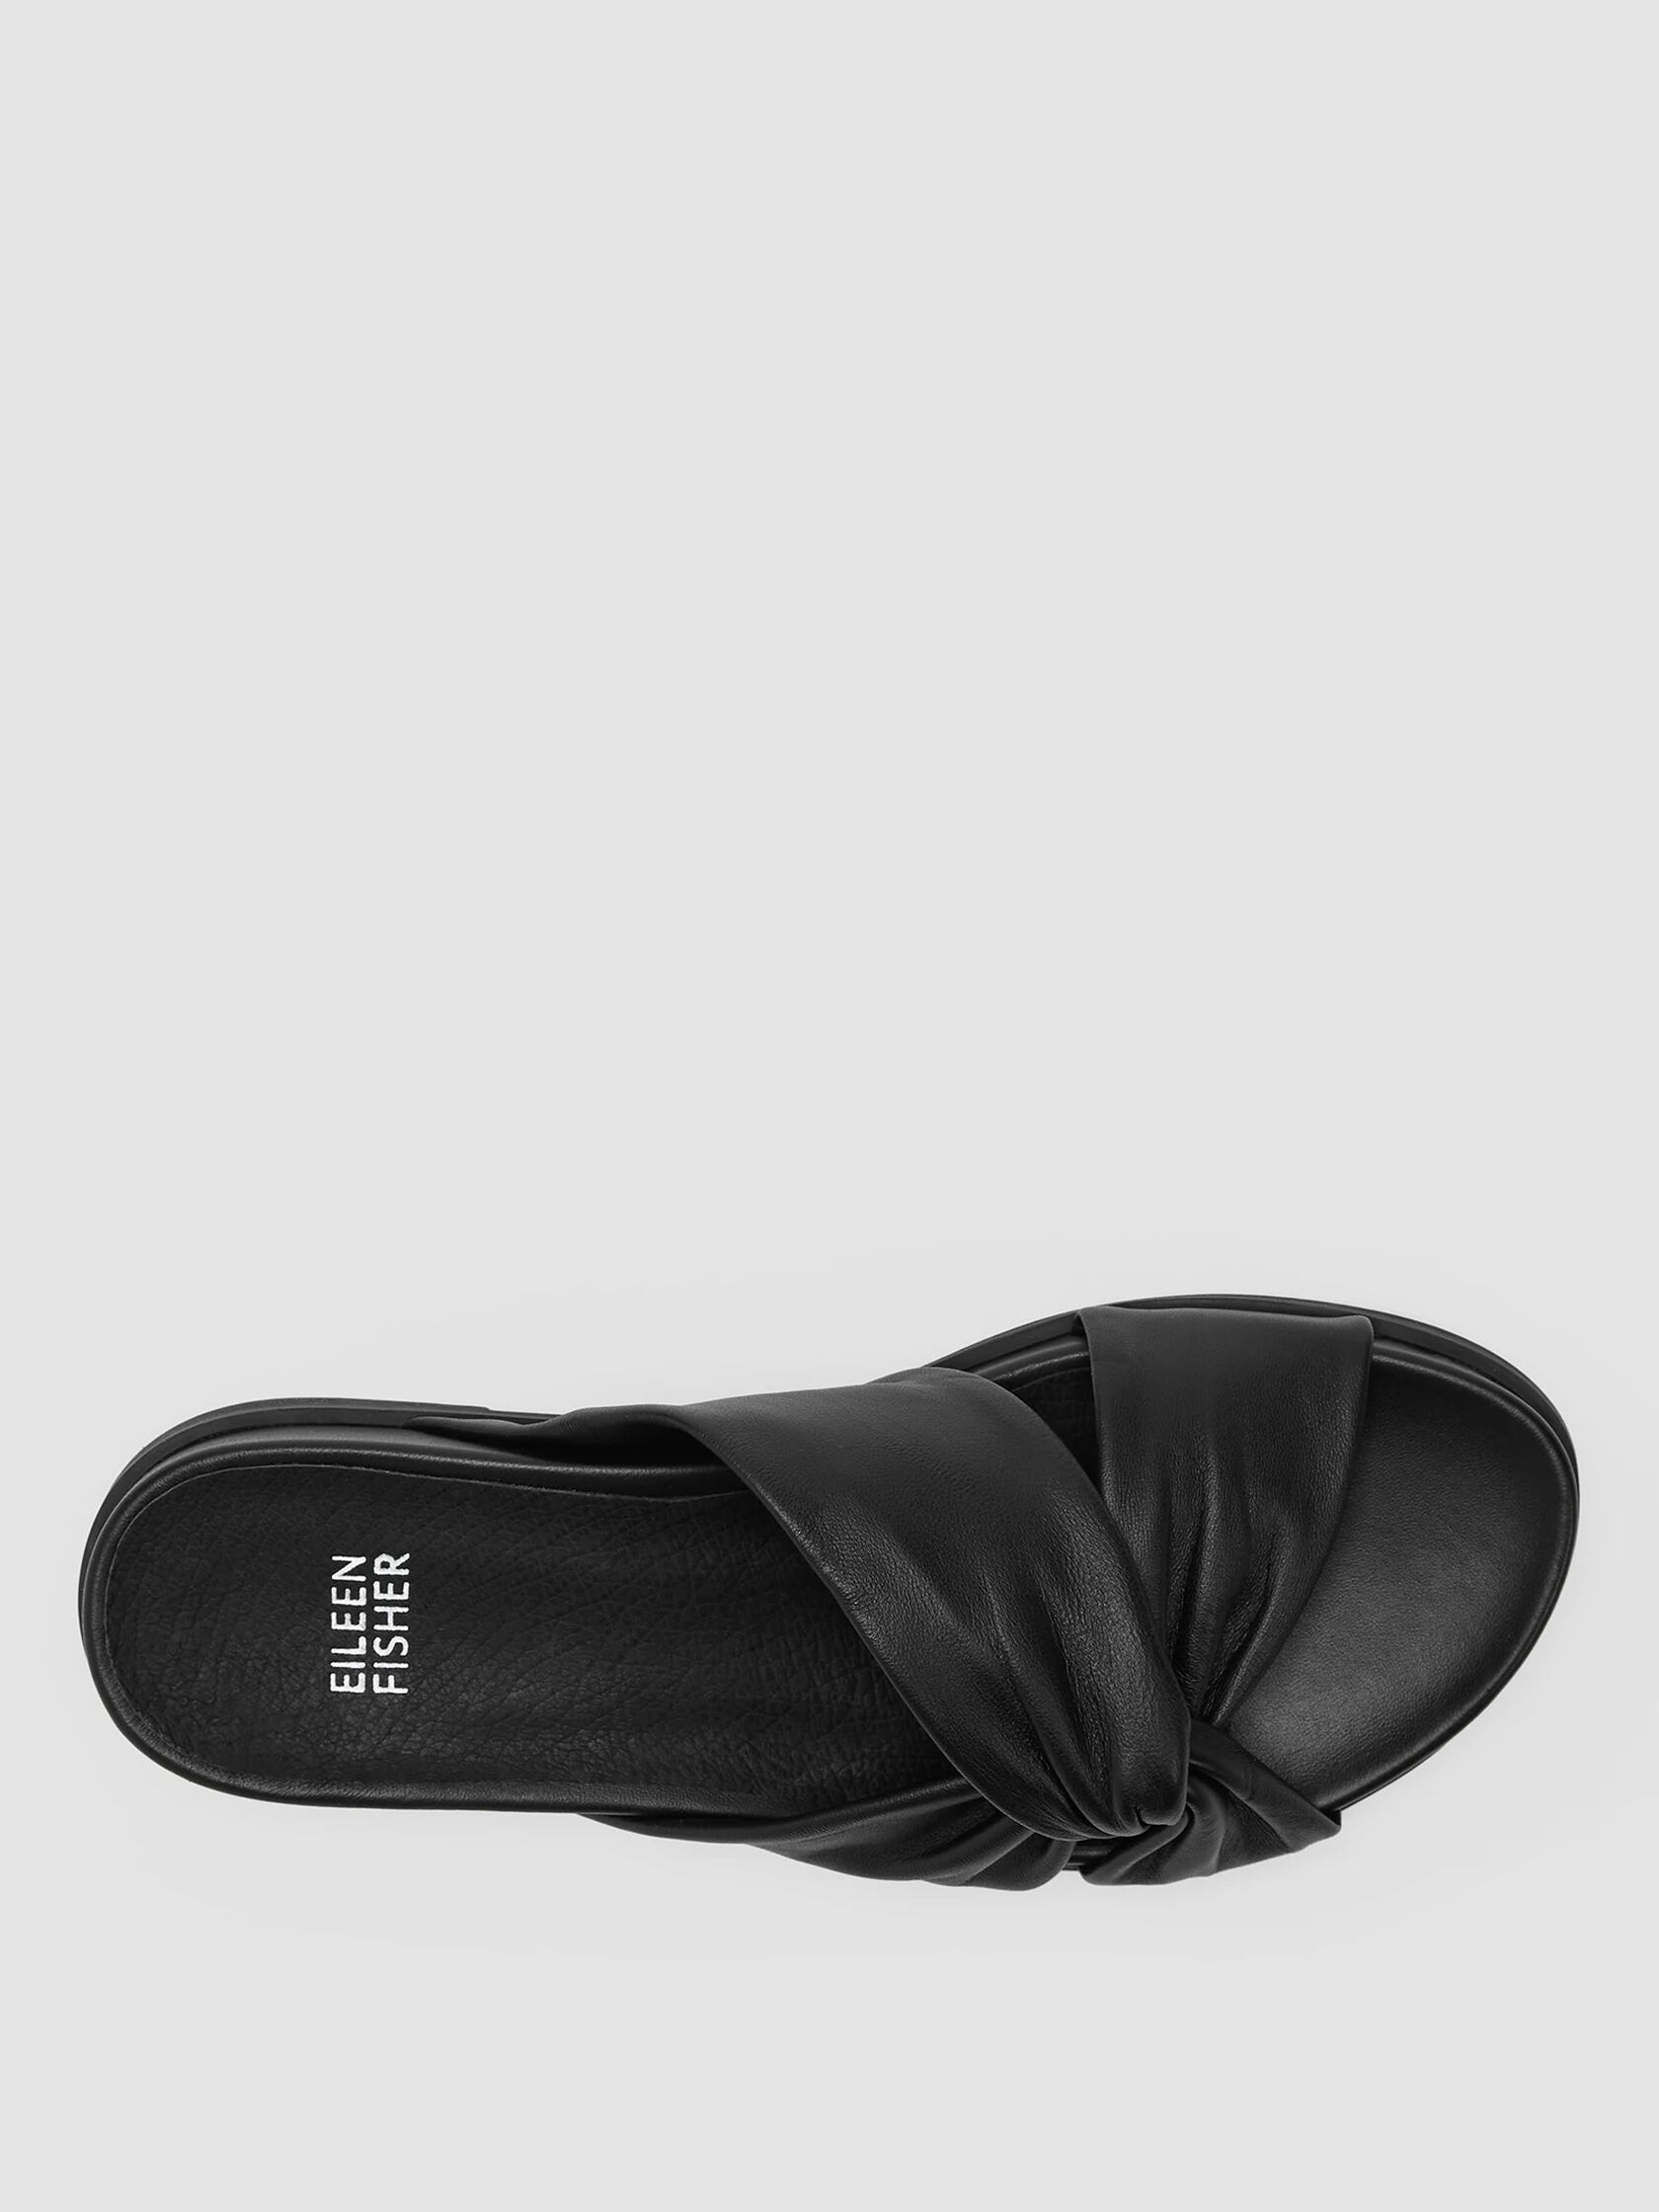 Dello Nappa Leather Wedge Sandal